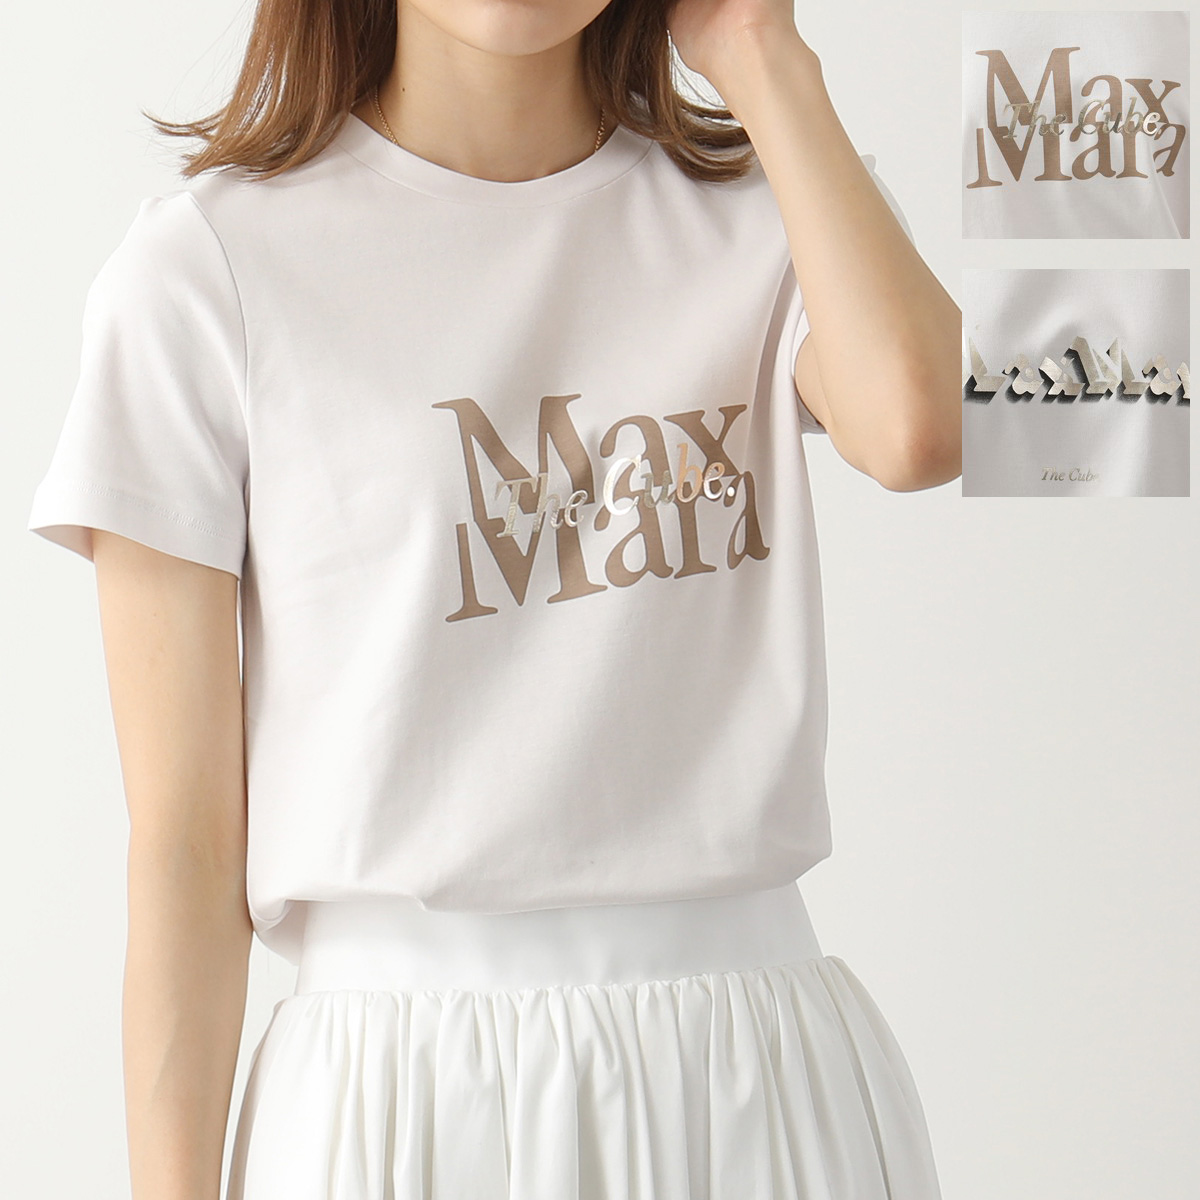 S MAX MARA エス マックスマーラ 半袖 Tシャツ ONDA The Cube レディース カットソー コットン ロゴT クルーネック  カラー2色 | インポートセレクト musee